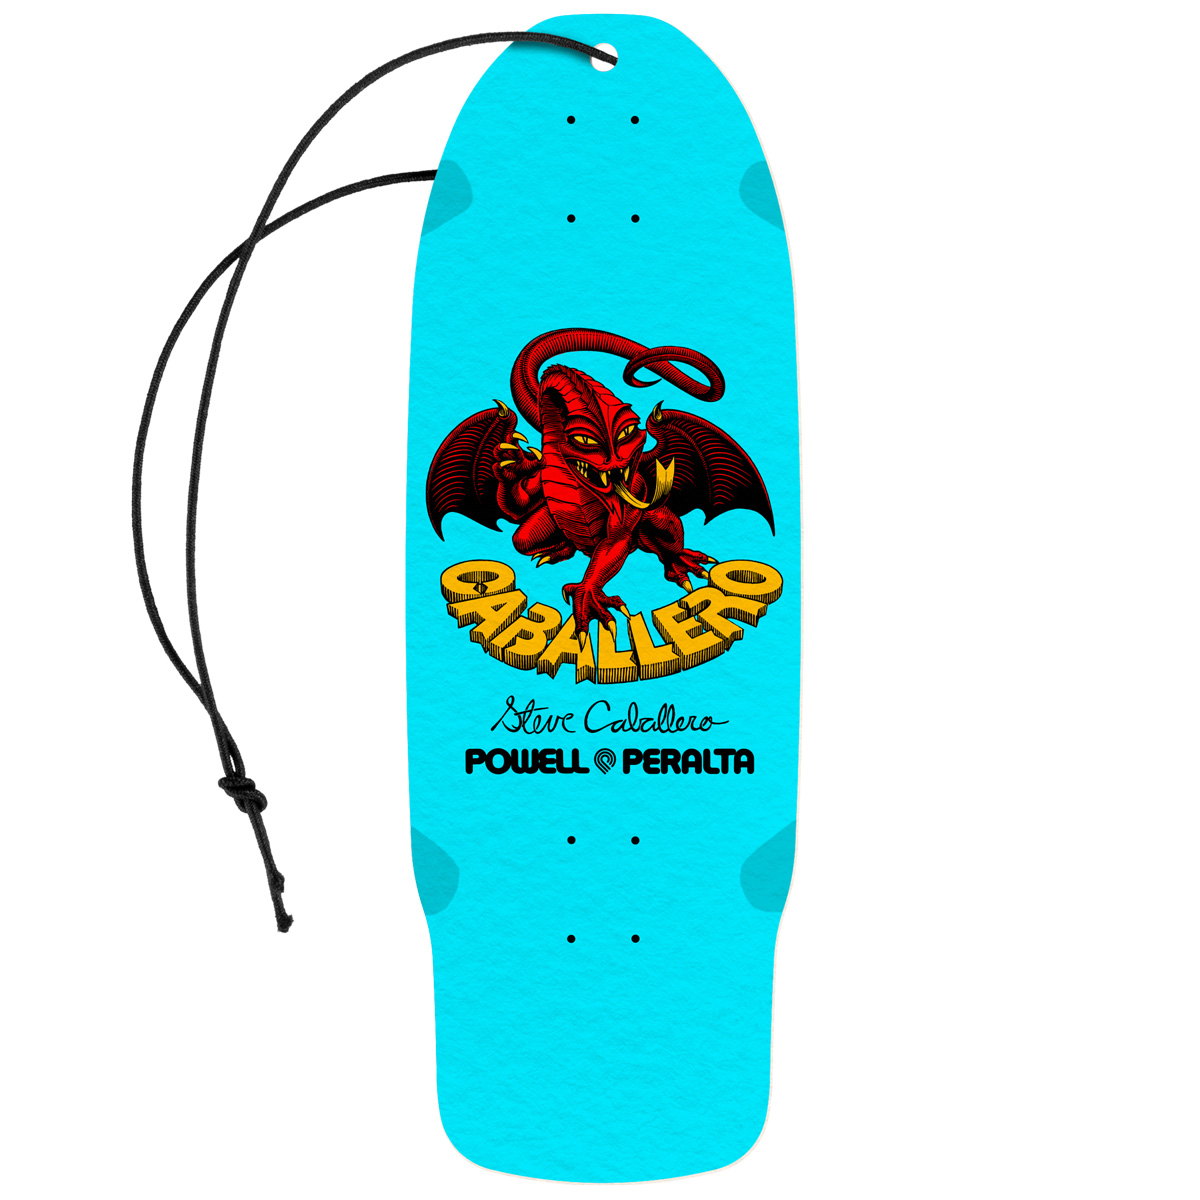 Powell Peralta Bones Brigade Caballero Series 15 Air Freshener Light Blue